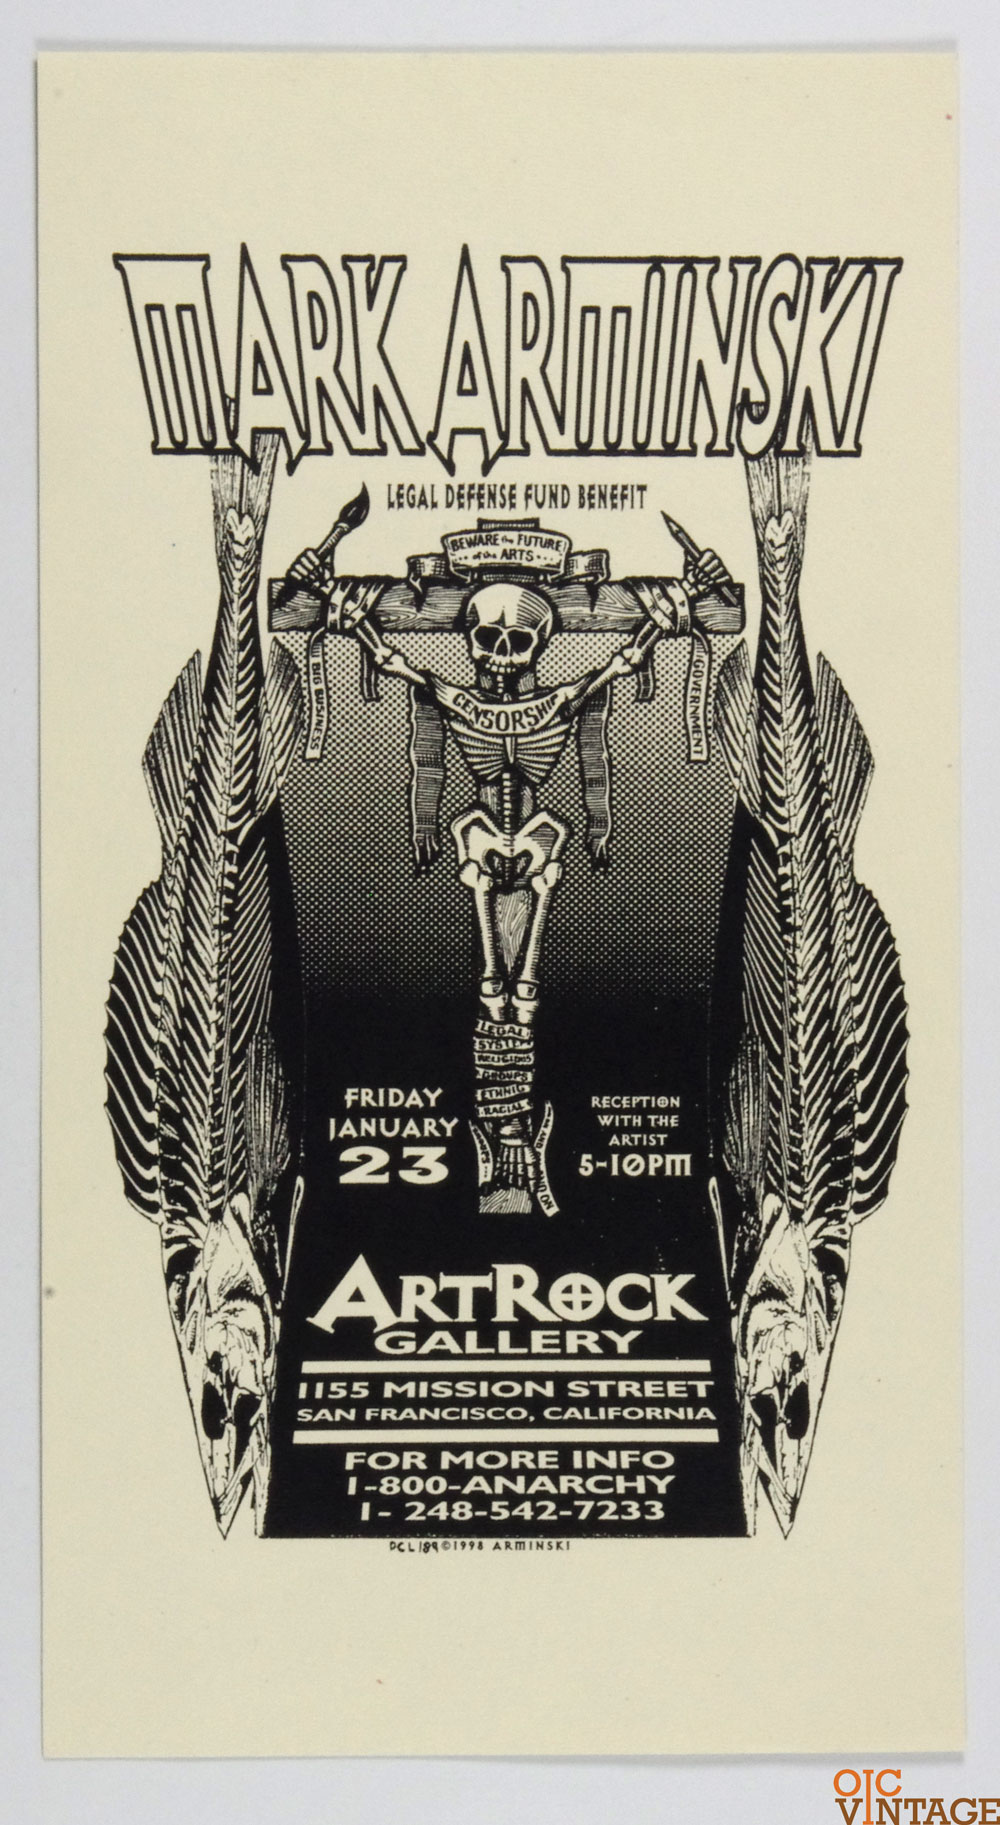 Beware the Future of the Arts Poster 1998 SF Exhibit Mark Arminski